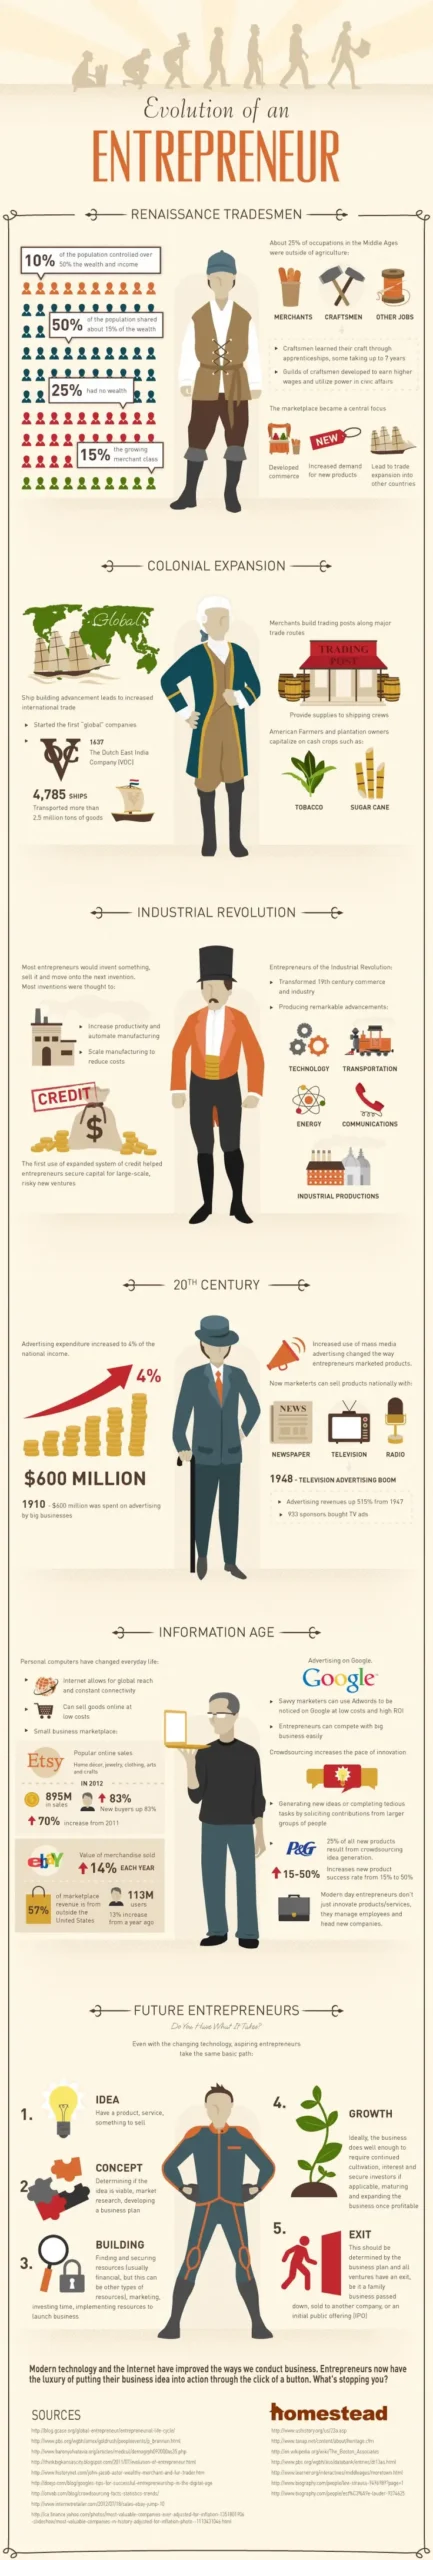 Evolution Of An Entrepreneur [InfoGraphic]
